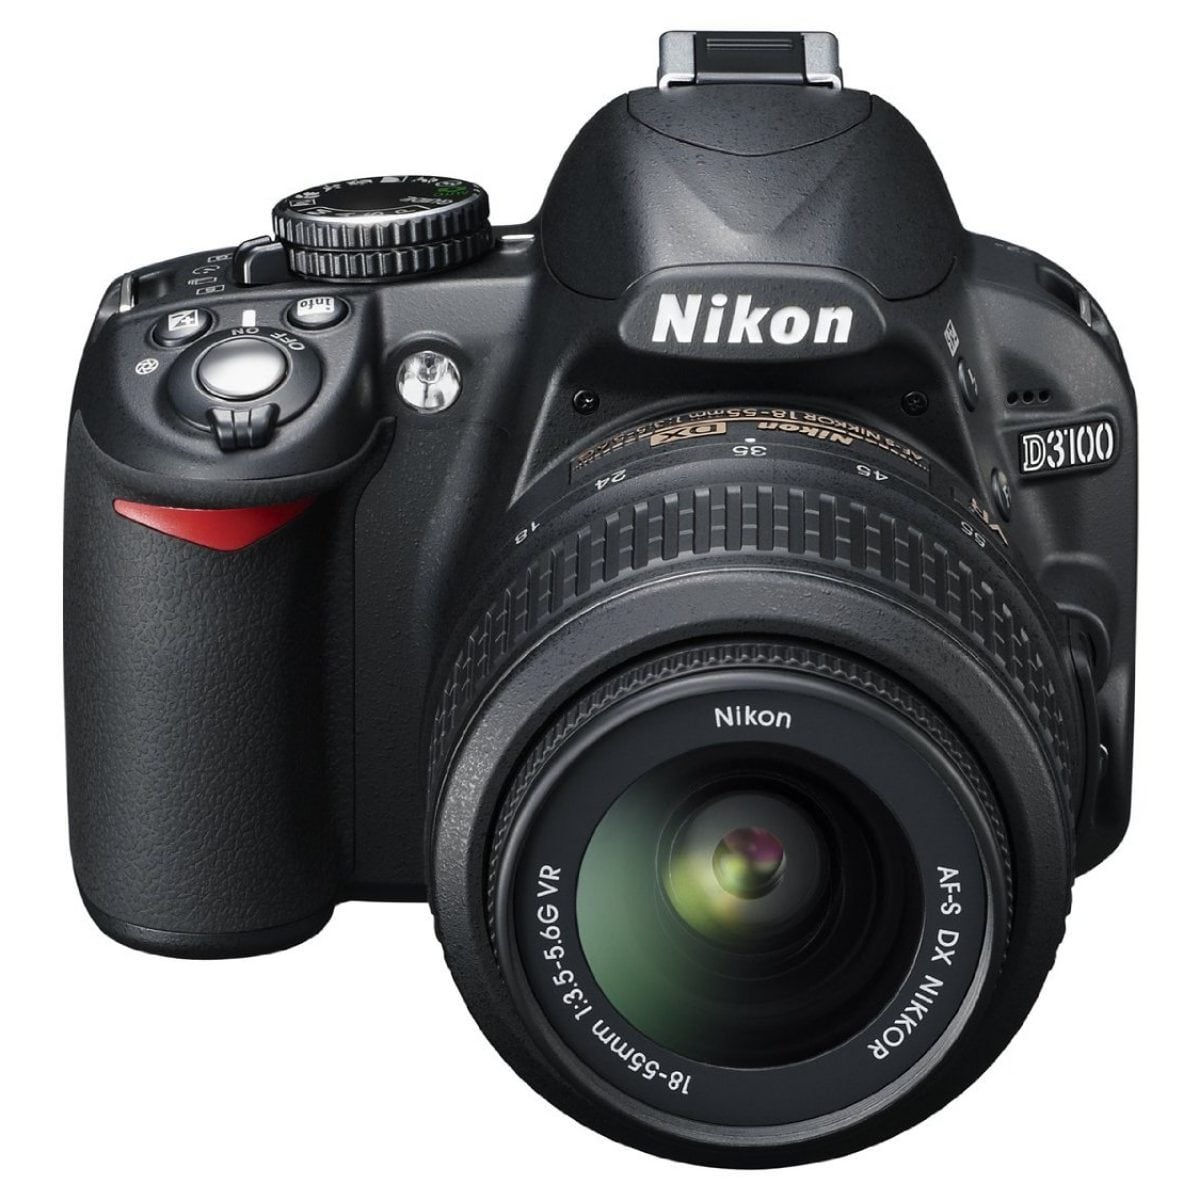 Kamera DSLR Nikon D3100 review